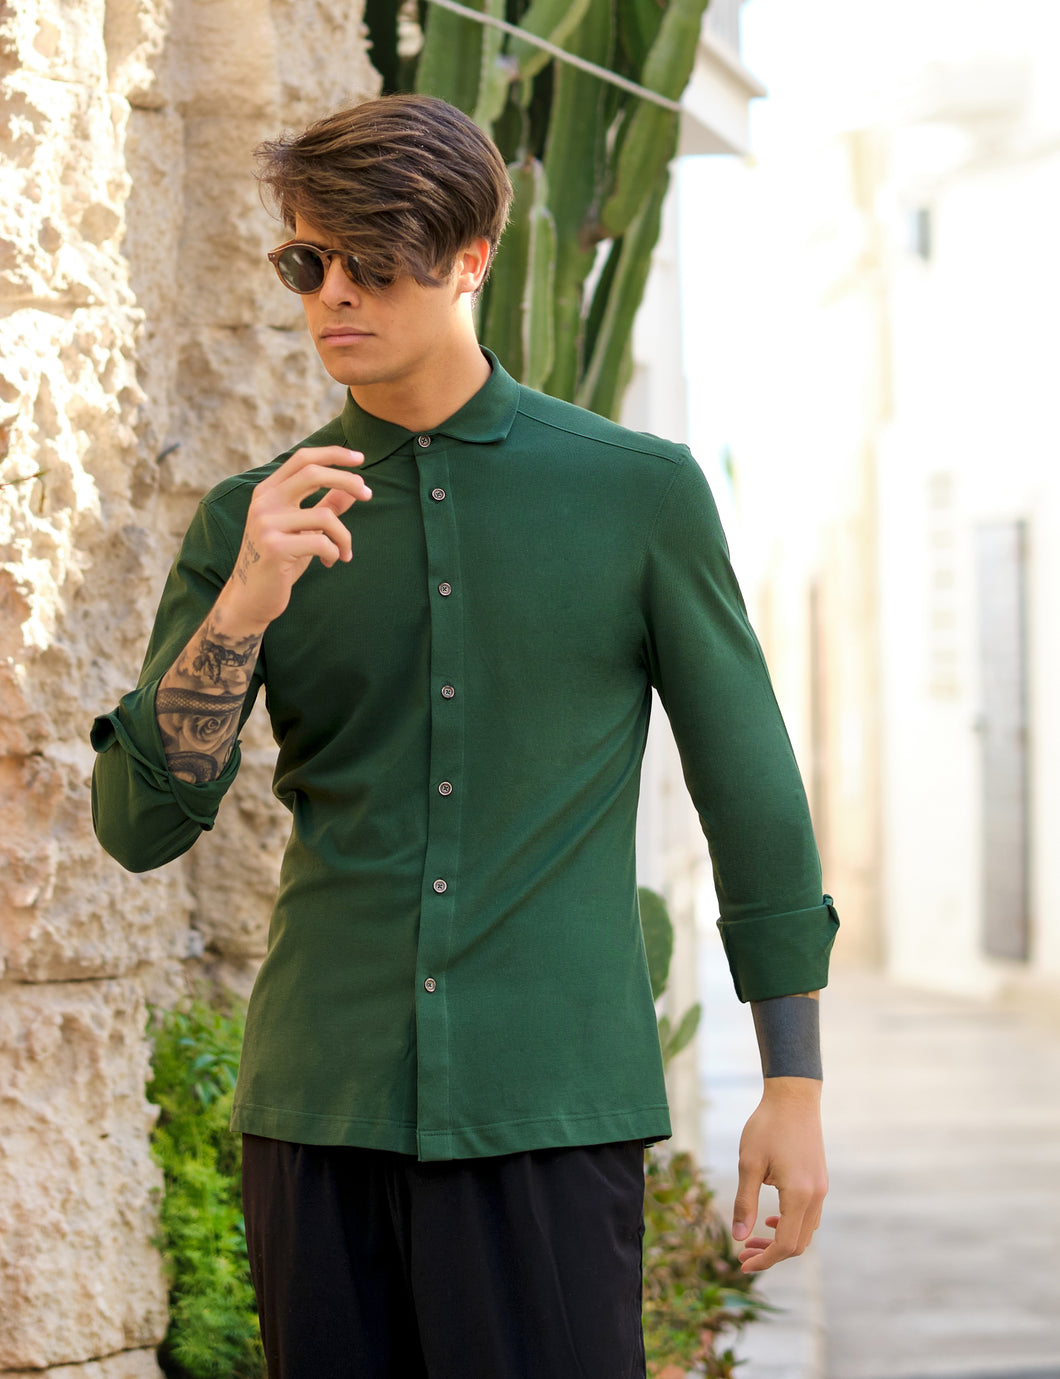 Polo Camicia piquet Verdone verde inglese Jersey in maglia morbida manica lunga alta qualità puro cotone  made in italy knit Jersey piquet